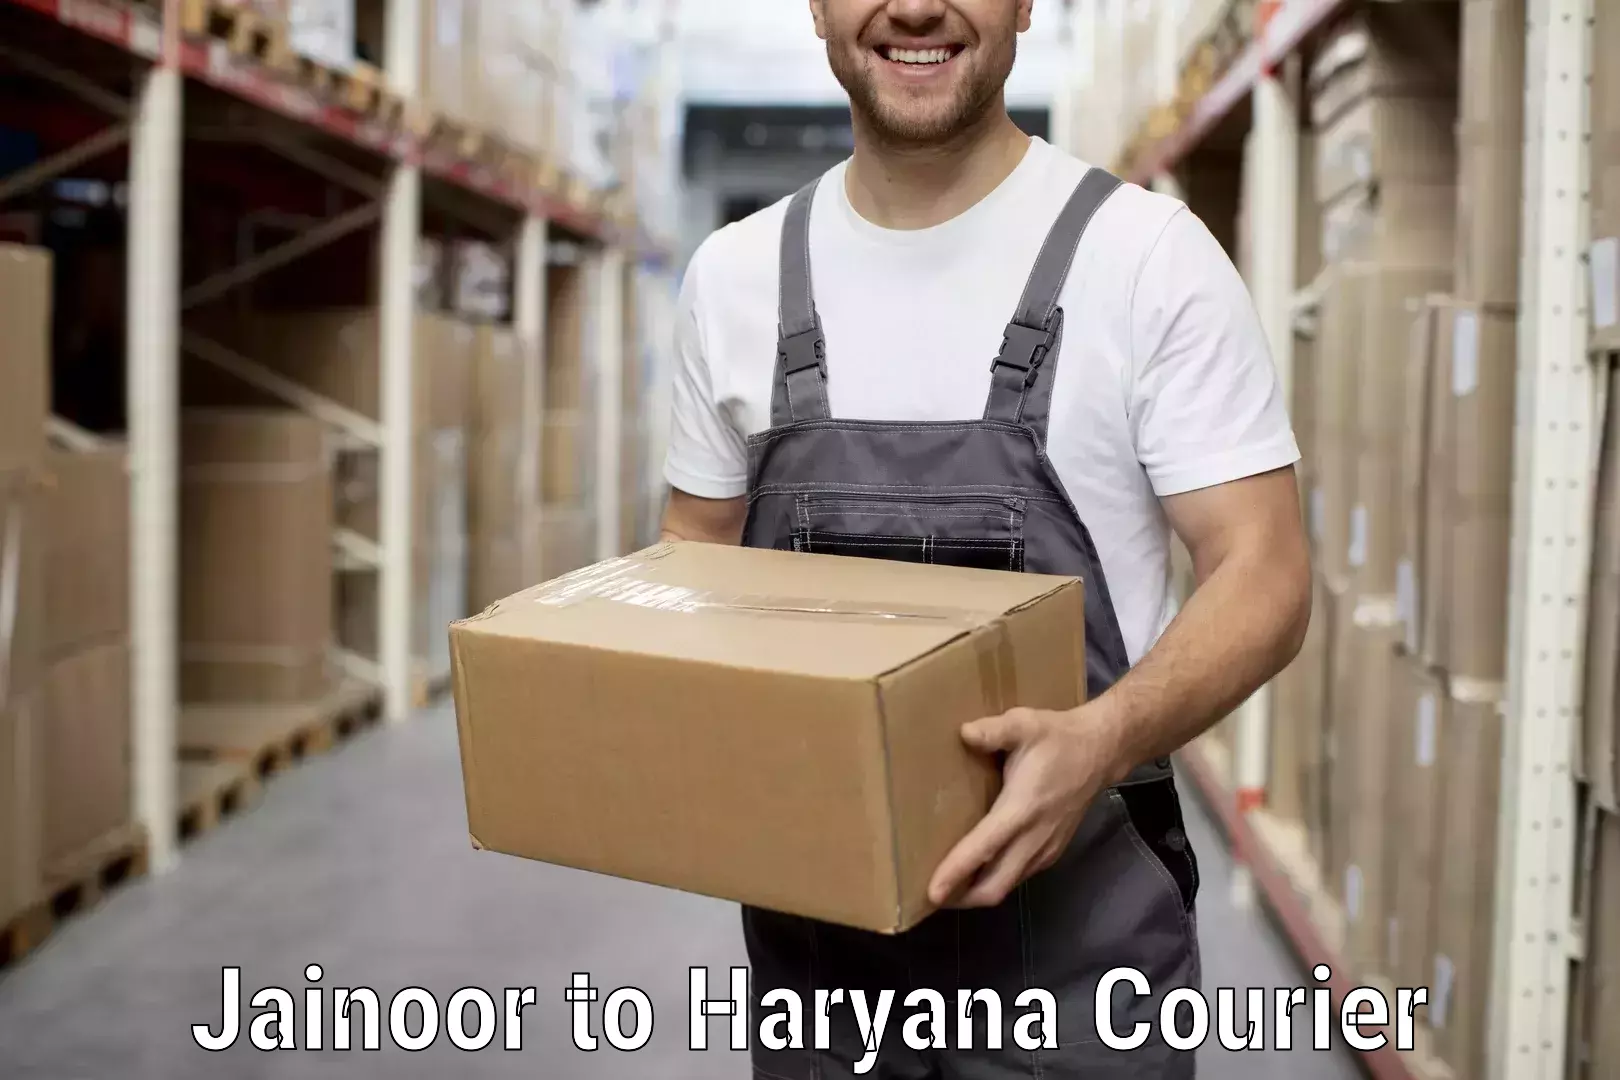 Trusted moving company Jainoor to Chirya